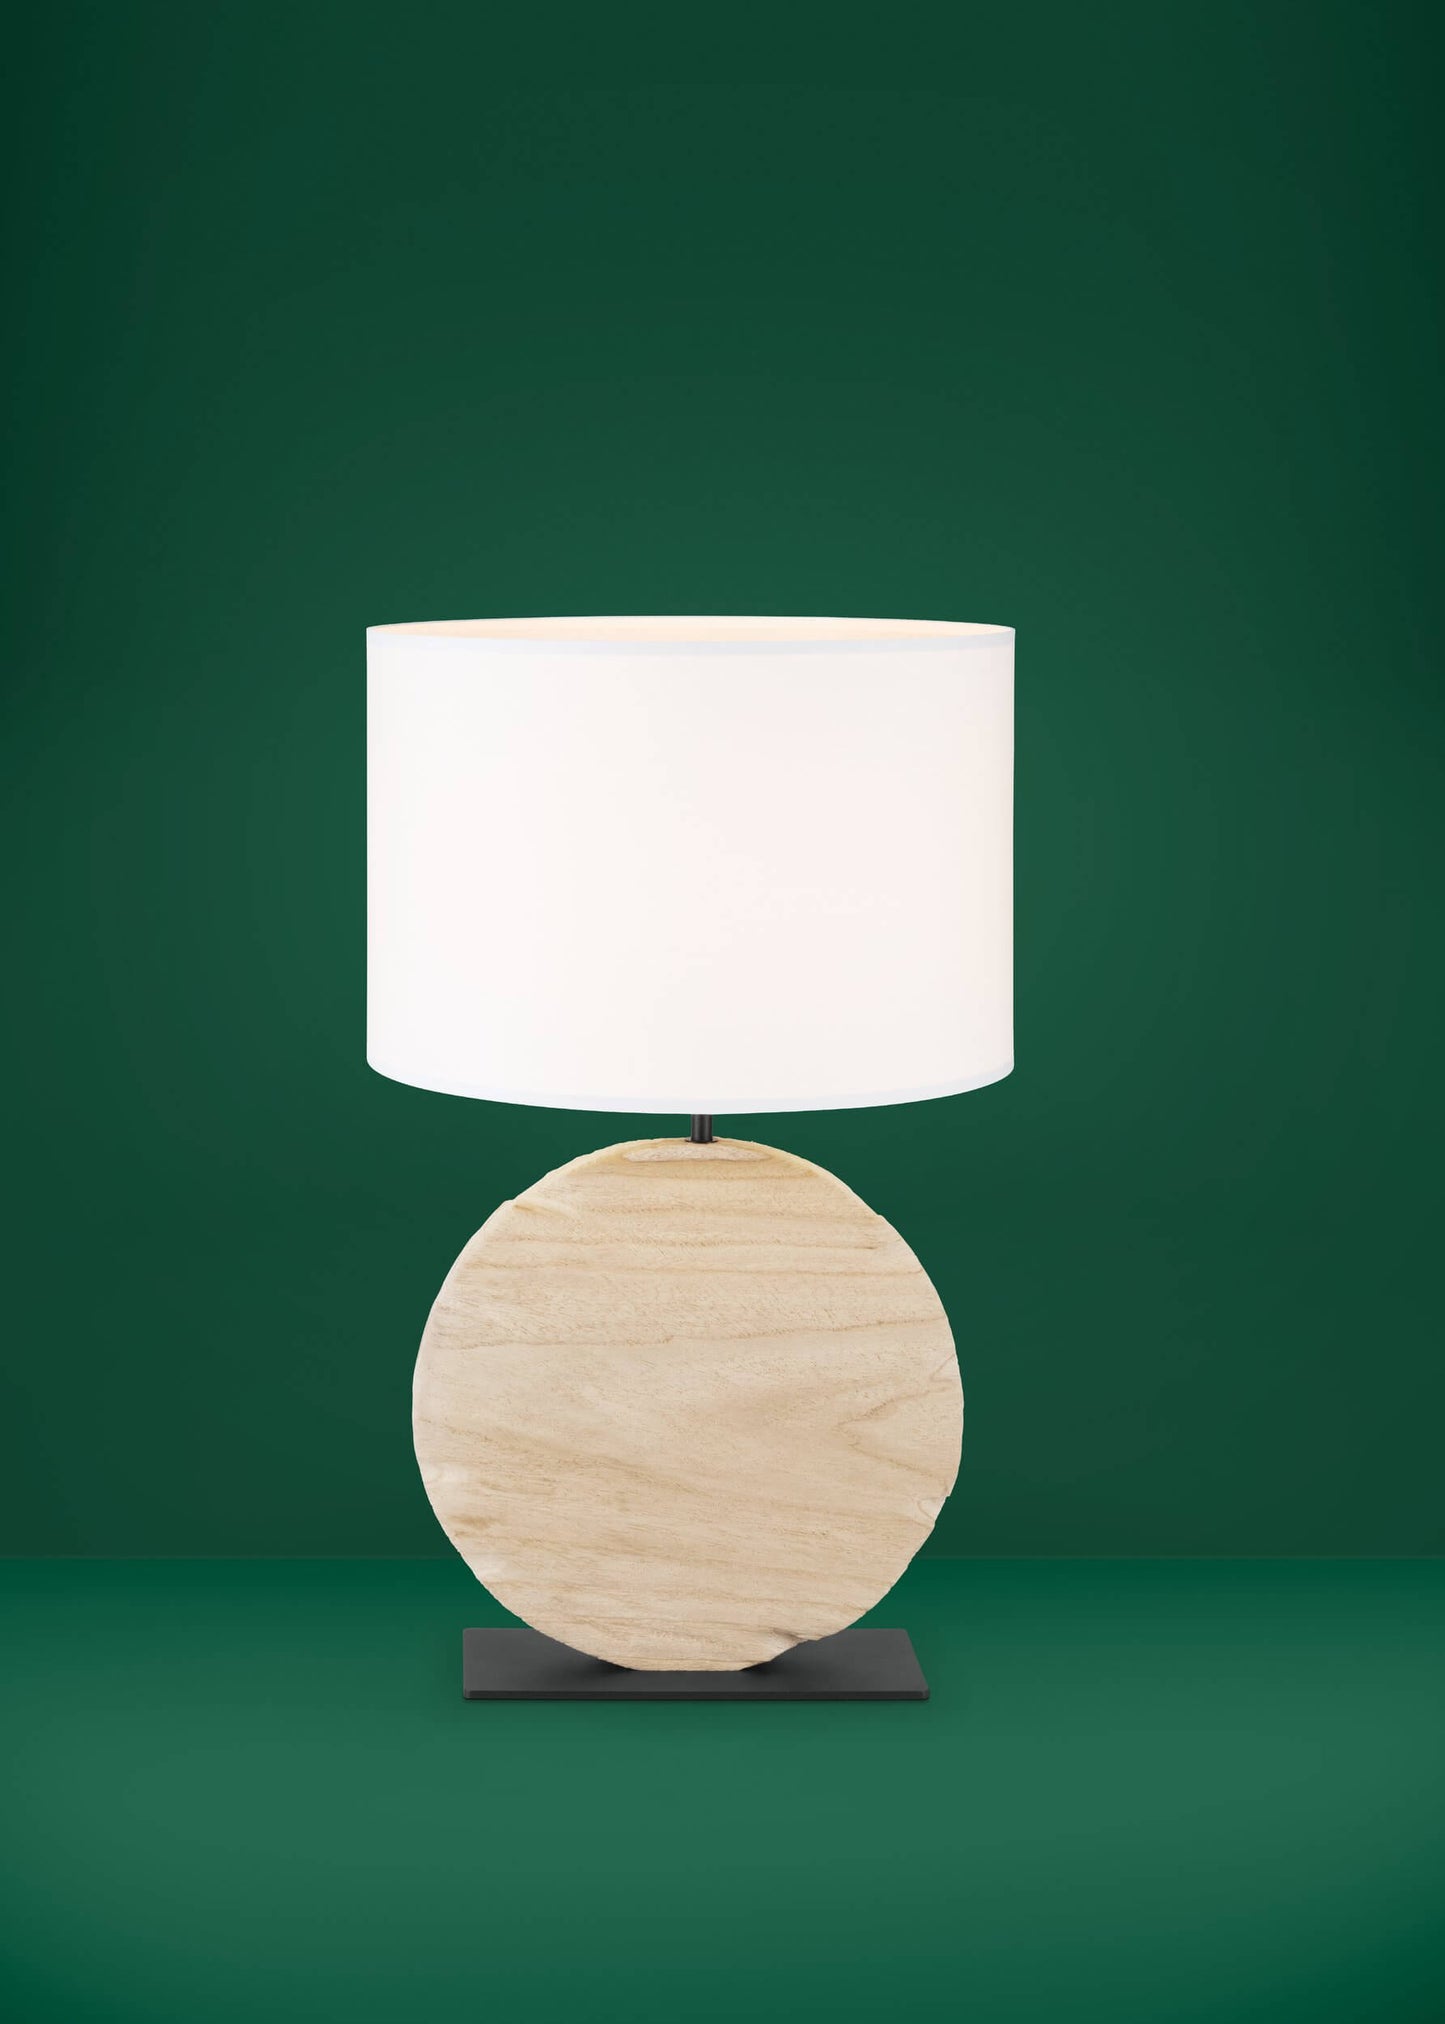 Contessore Wooden Table Lamp